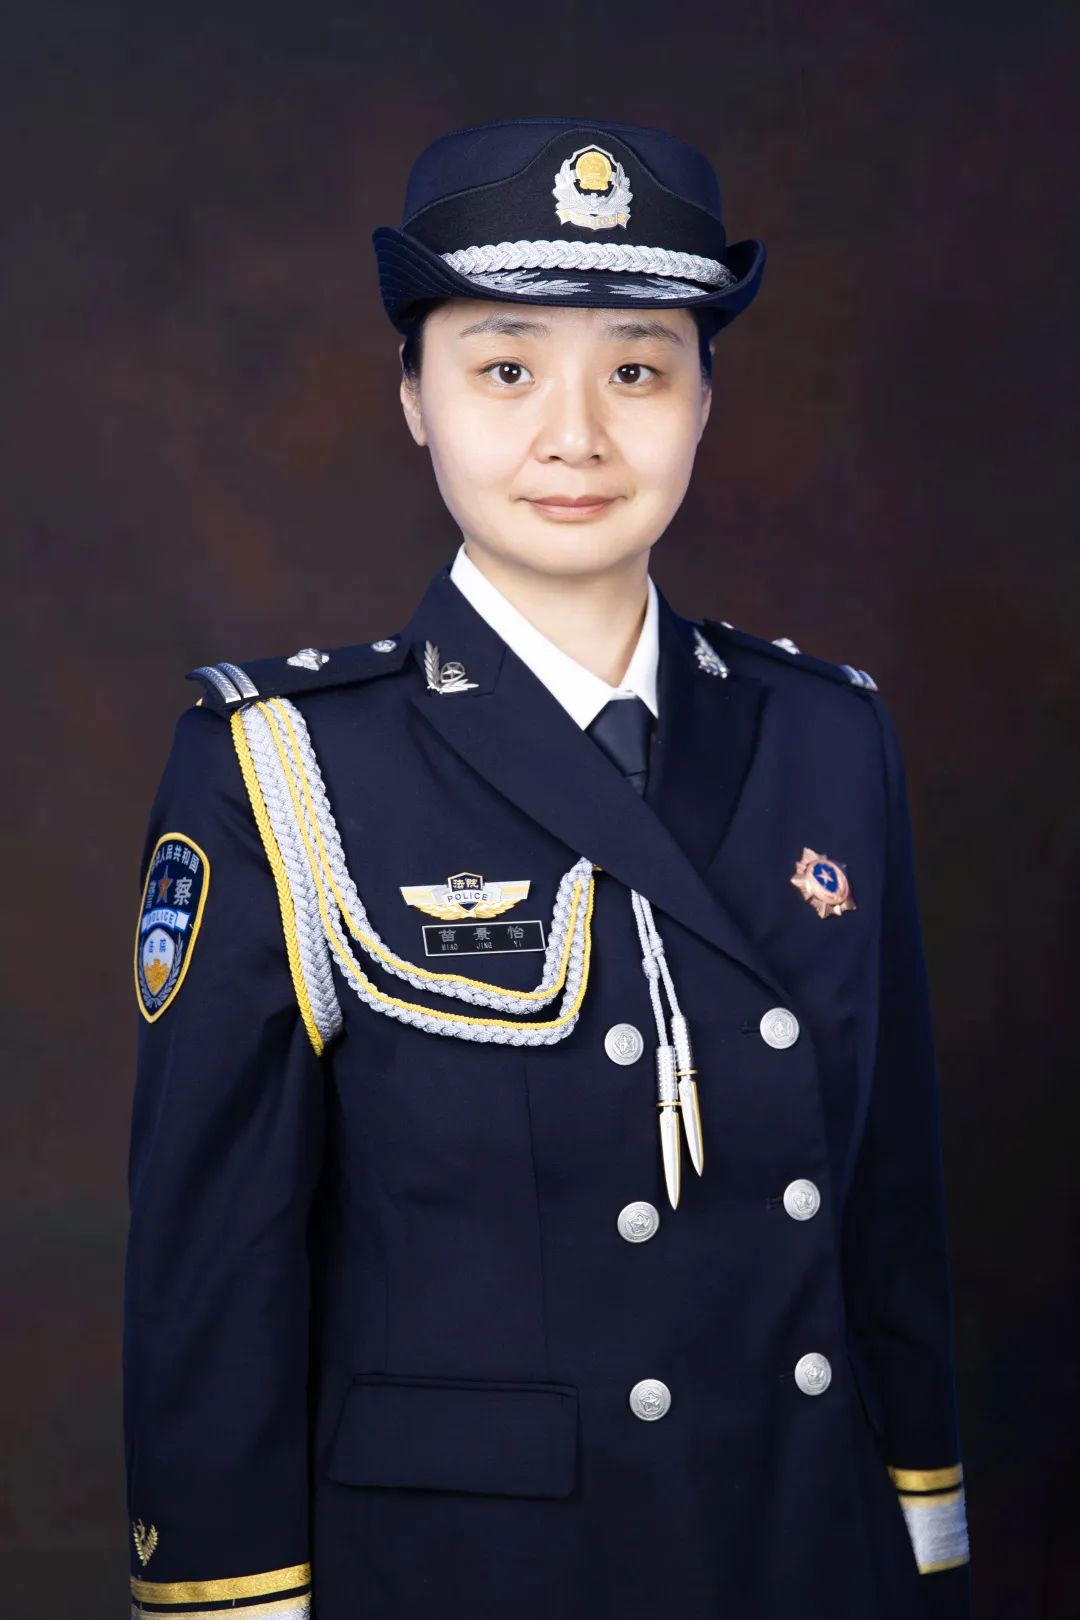 中国人民警察节丨向法警蓝致敬!